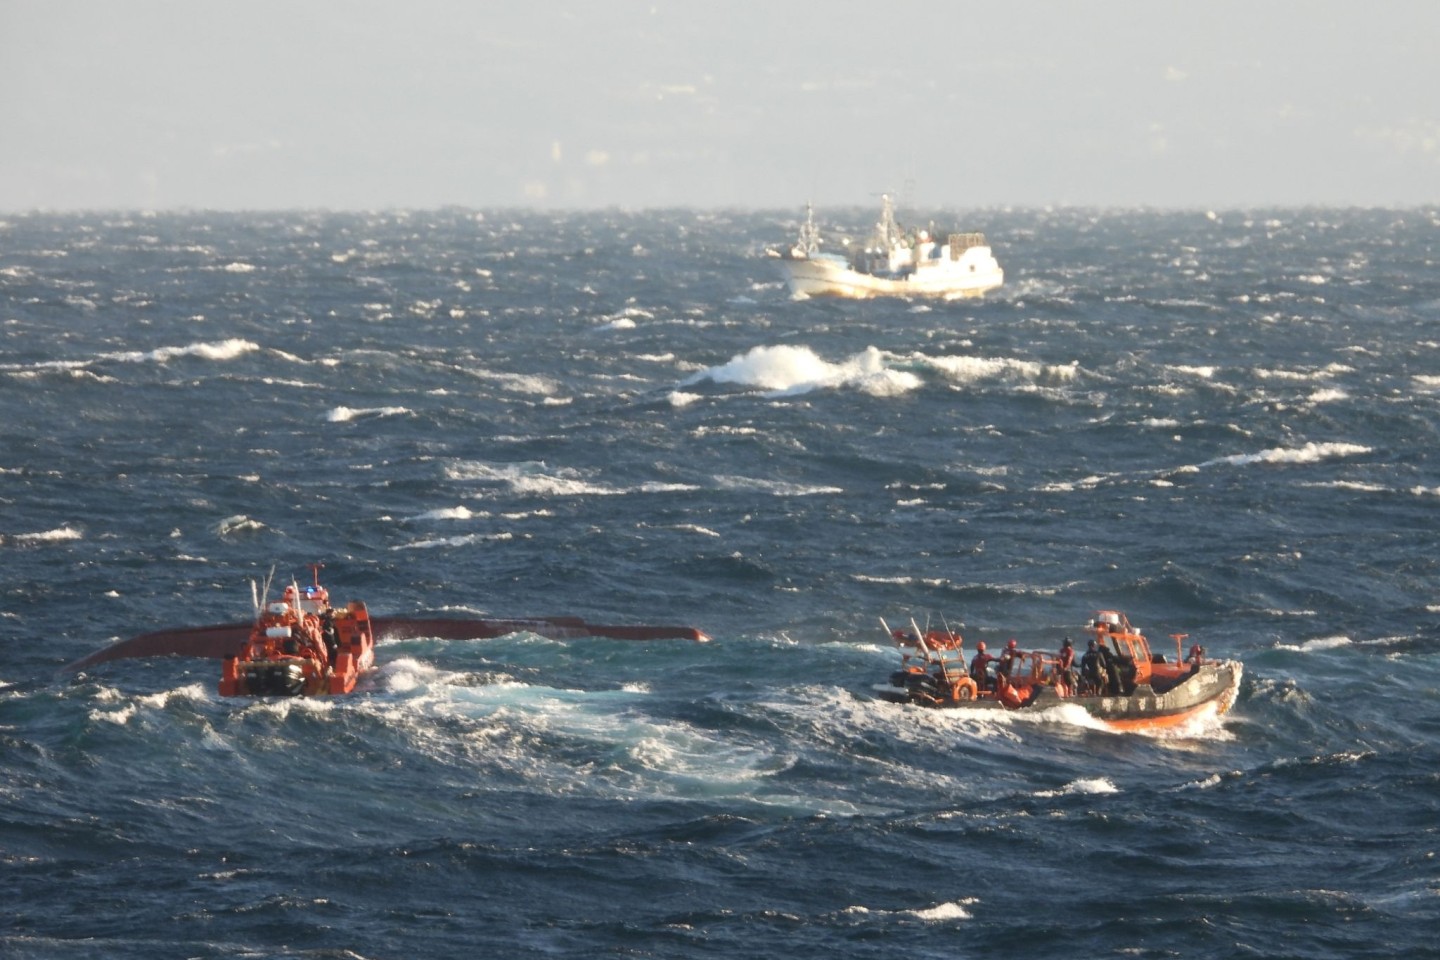 Suchmaßnahmen laufen in den Gewässern südlich der Ferieninsel Jeju, nachdem ein 29 Tonnen schweres Fischerboot gekentert ist.